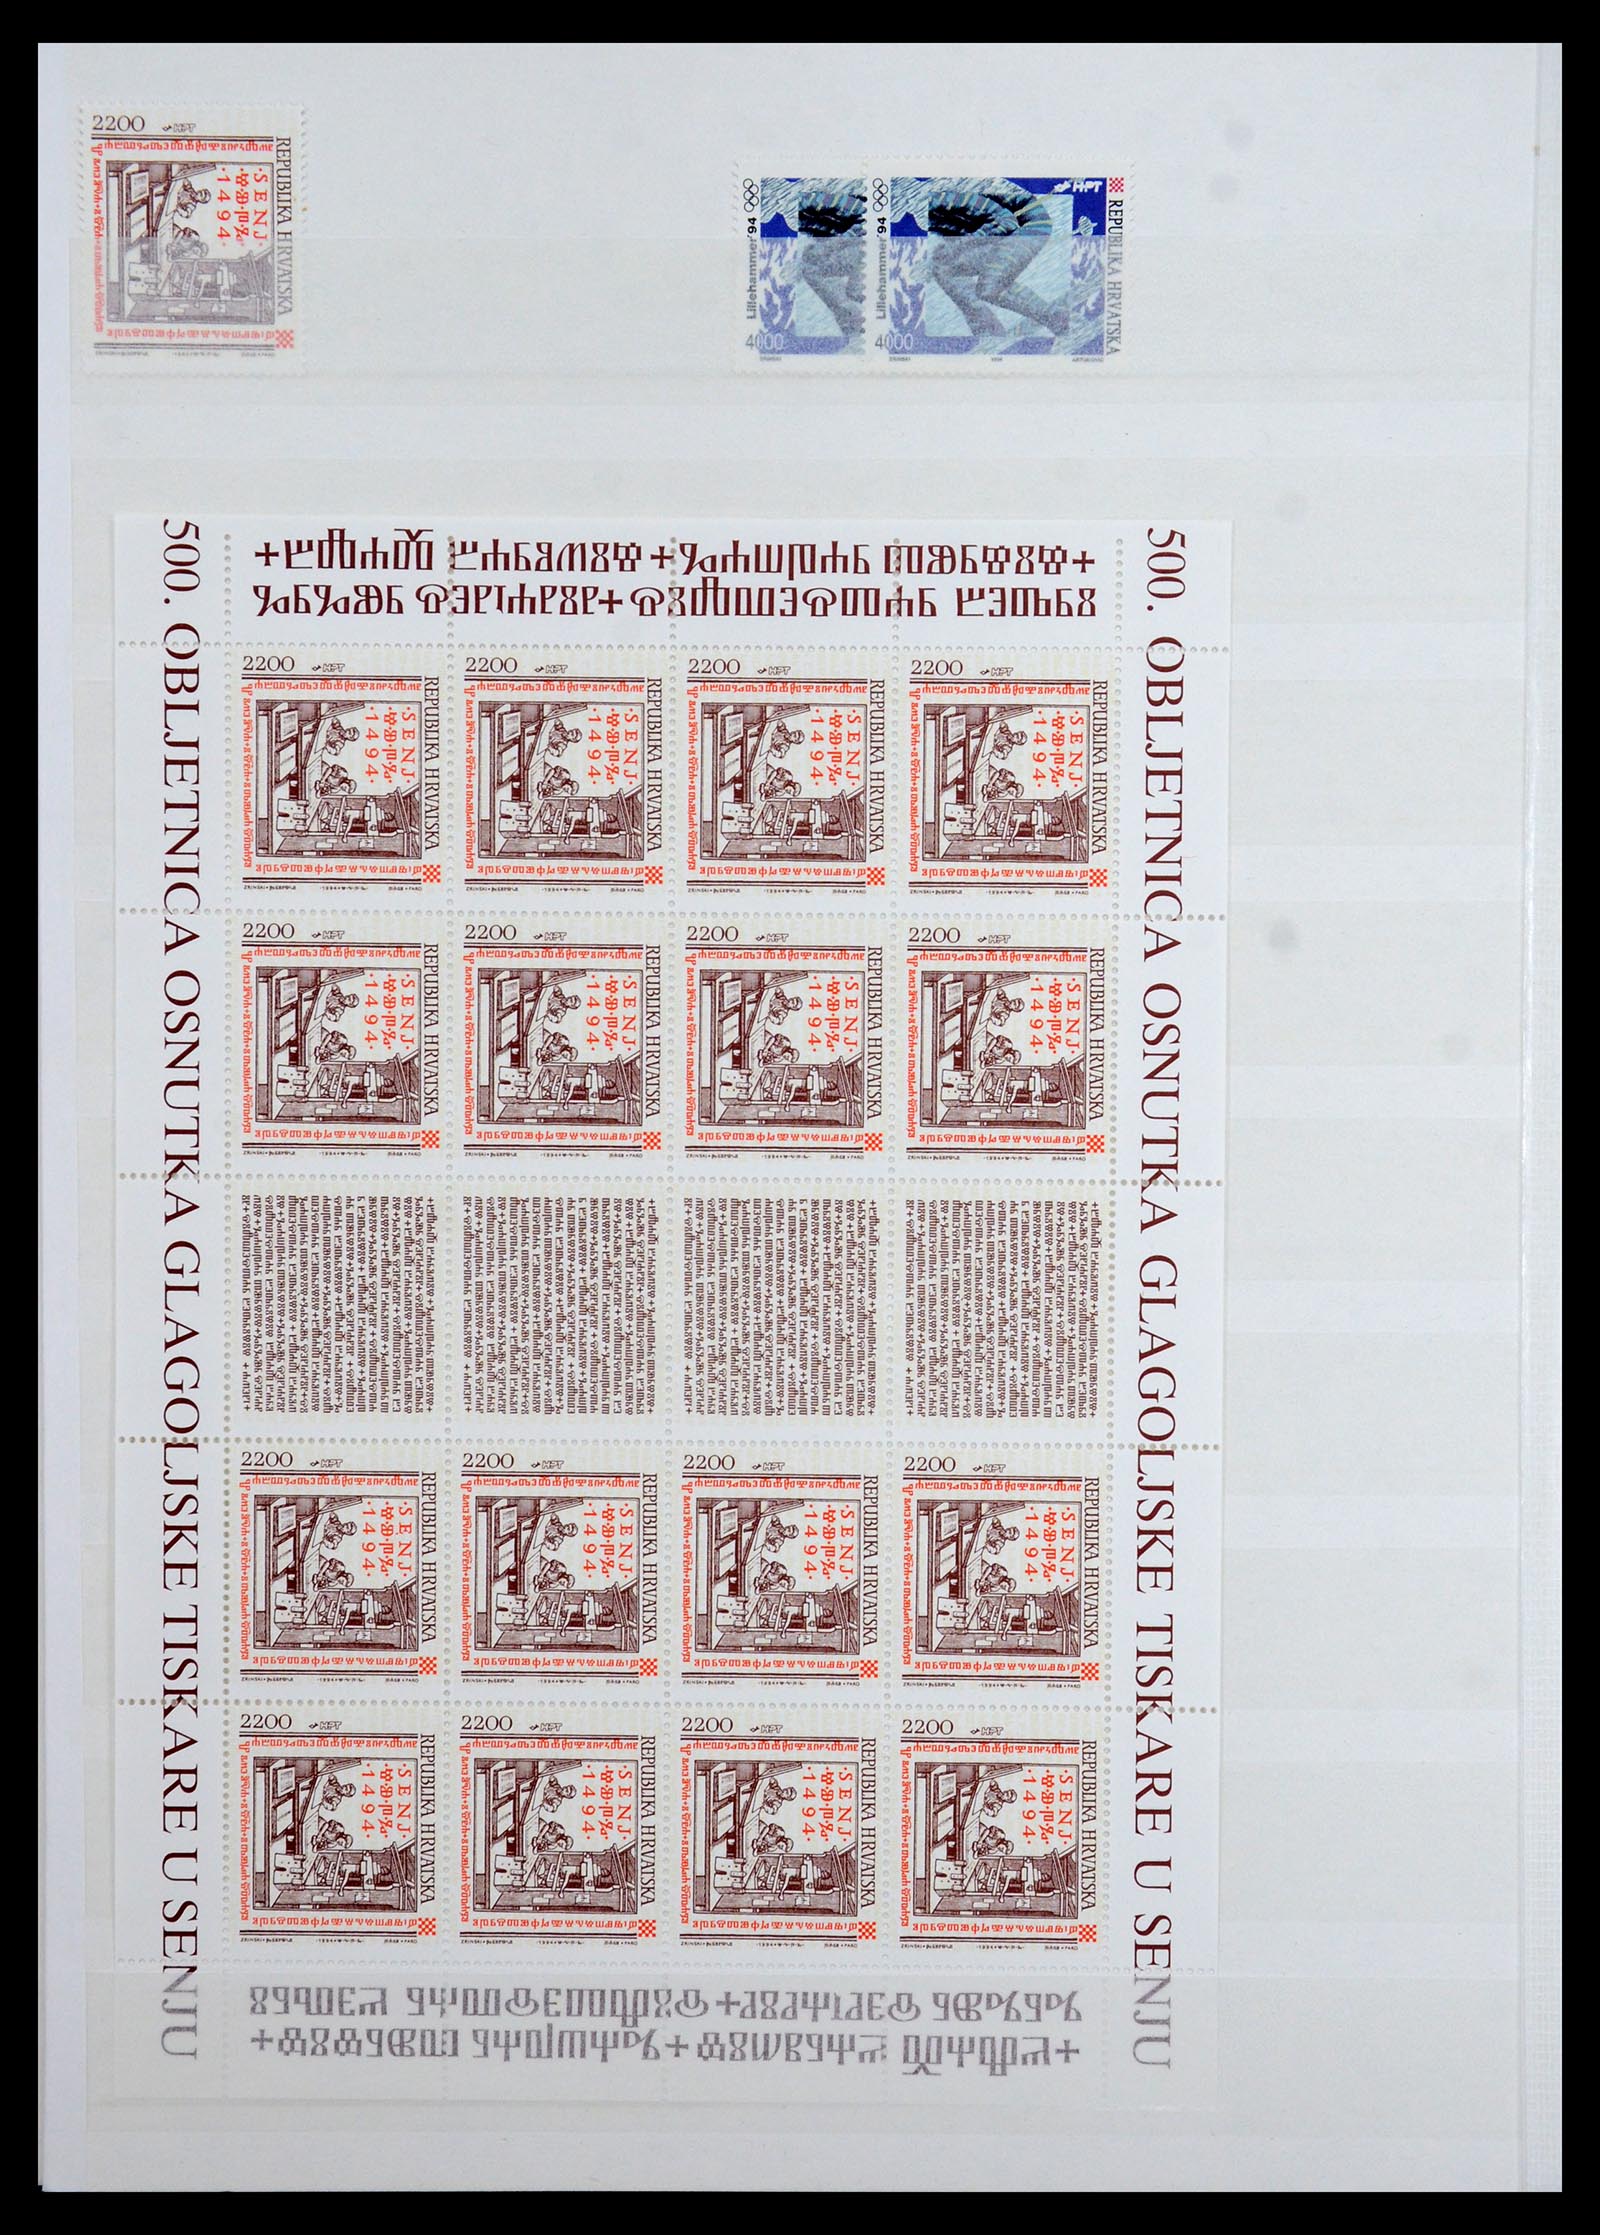 36461 038 - Stamp collection 36461 Slovenia, Croatia and Bosnia-Herzegovina MNH 1991